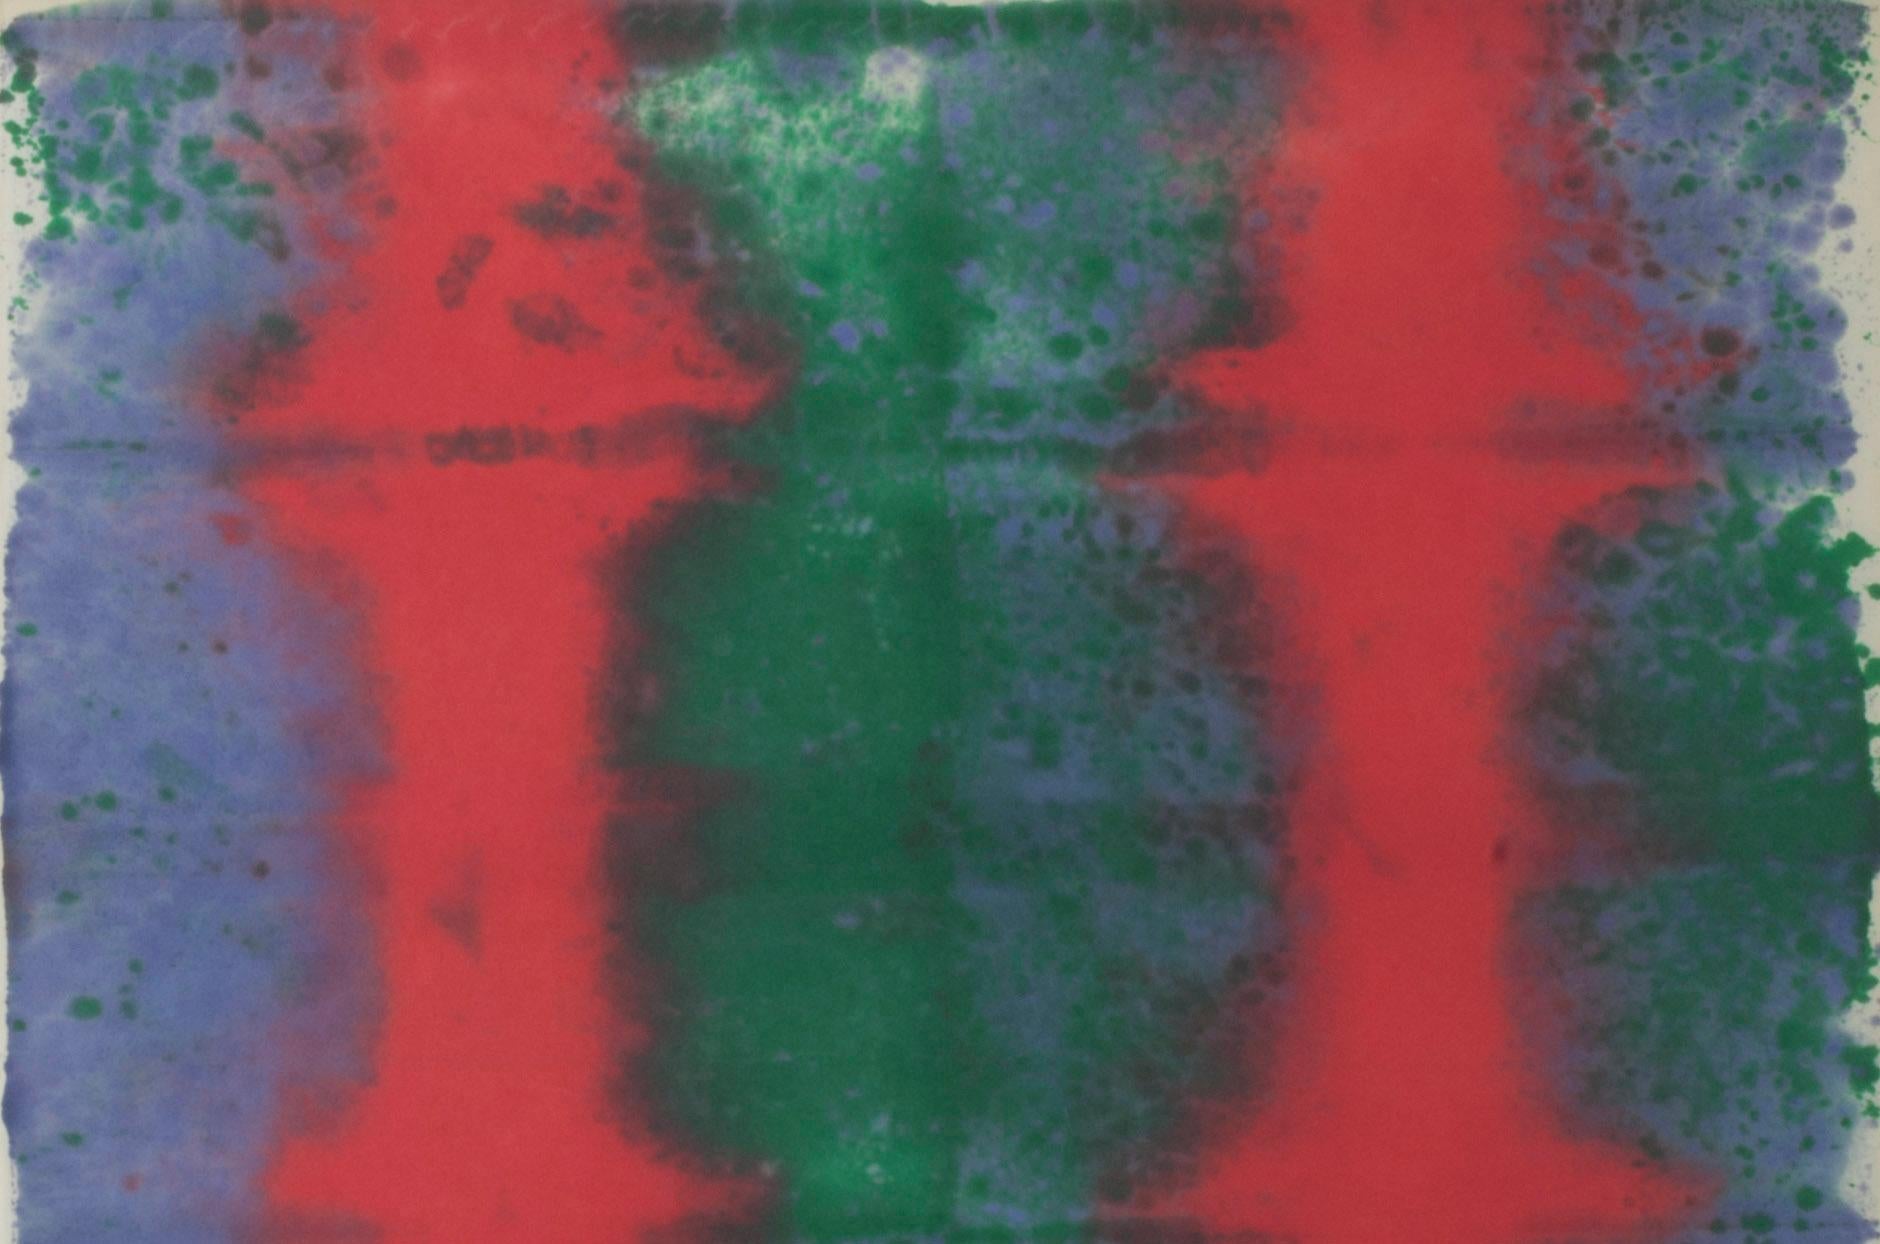 Unbenannt
Aquarell auf Papier, um 1971
Vorzeichenlos
Aus der Sammlung von Ileana Sonnabend (1914-2007)
Laddie John Dill, ein Künstler aus Los Angeles, hatte seine erste Einzelausstellung in New York City in der Illeanna Sonnabend Gallery im Jahr